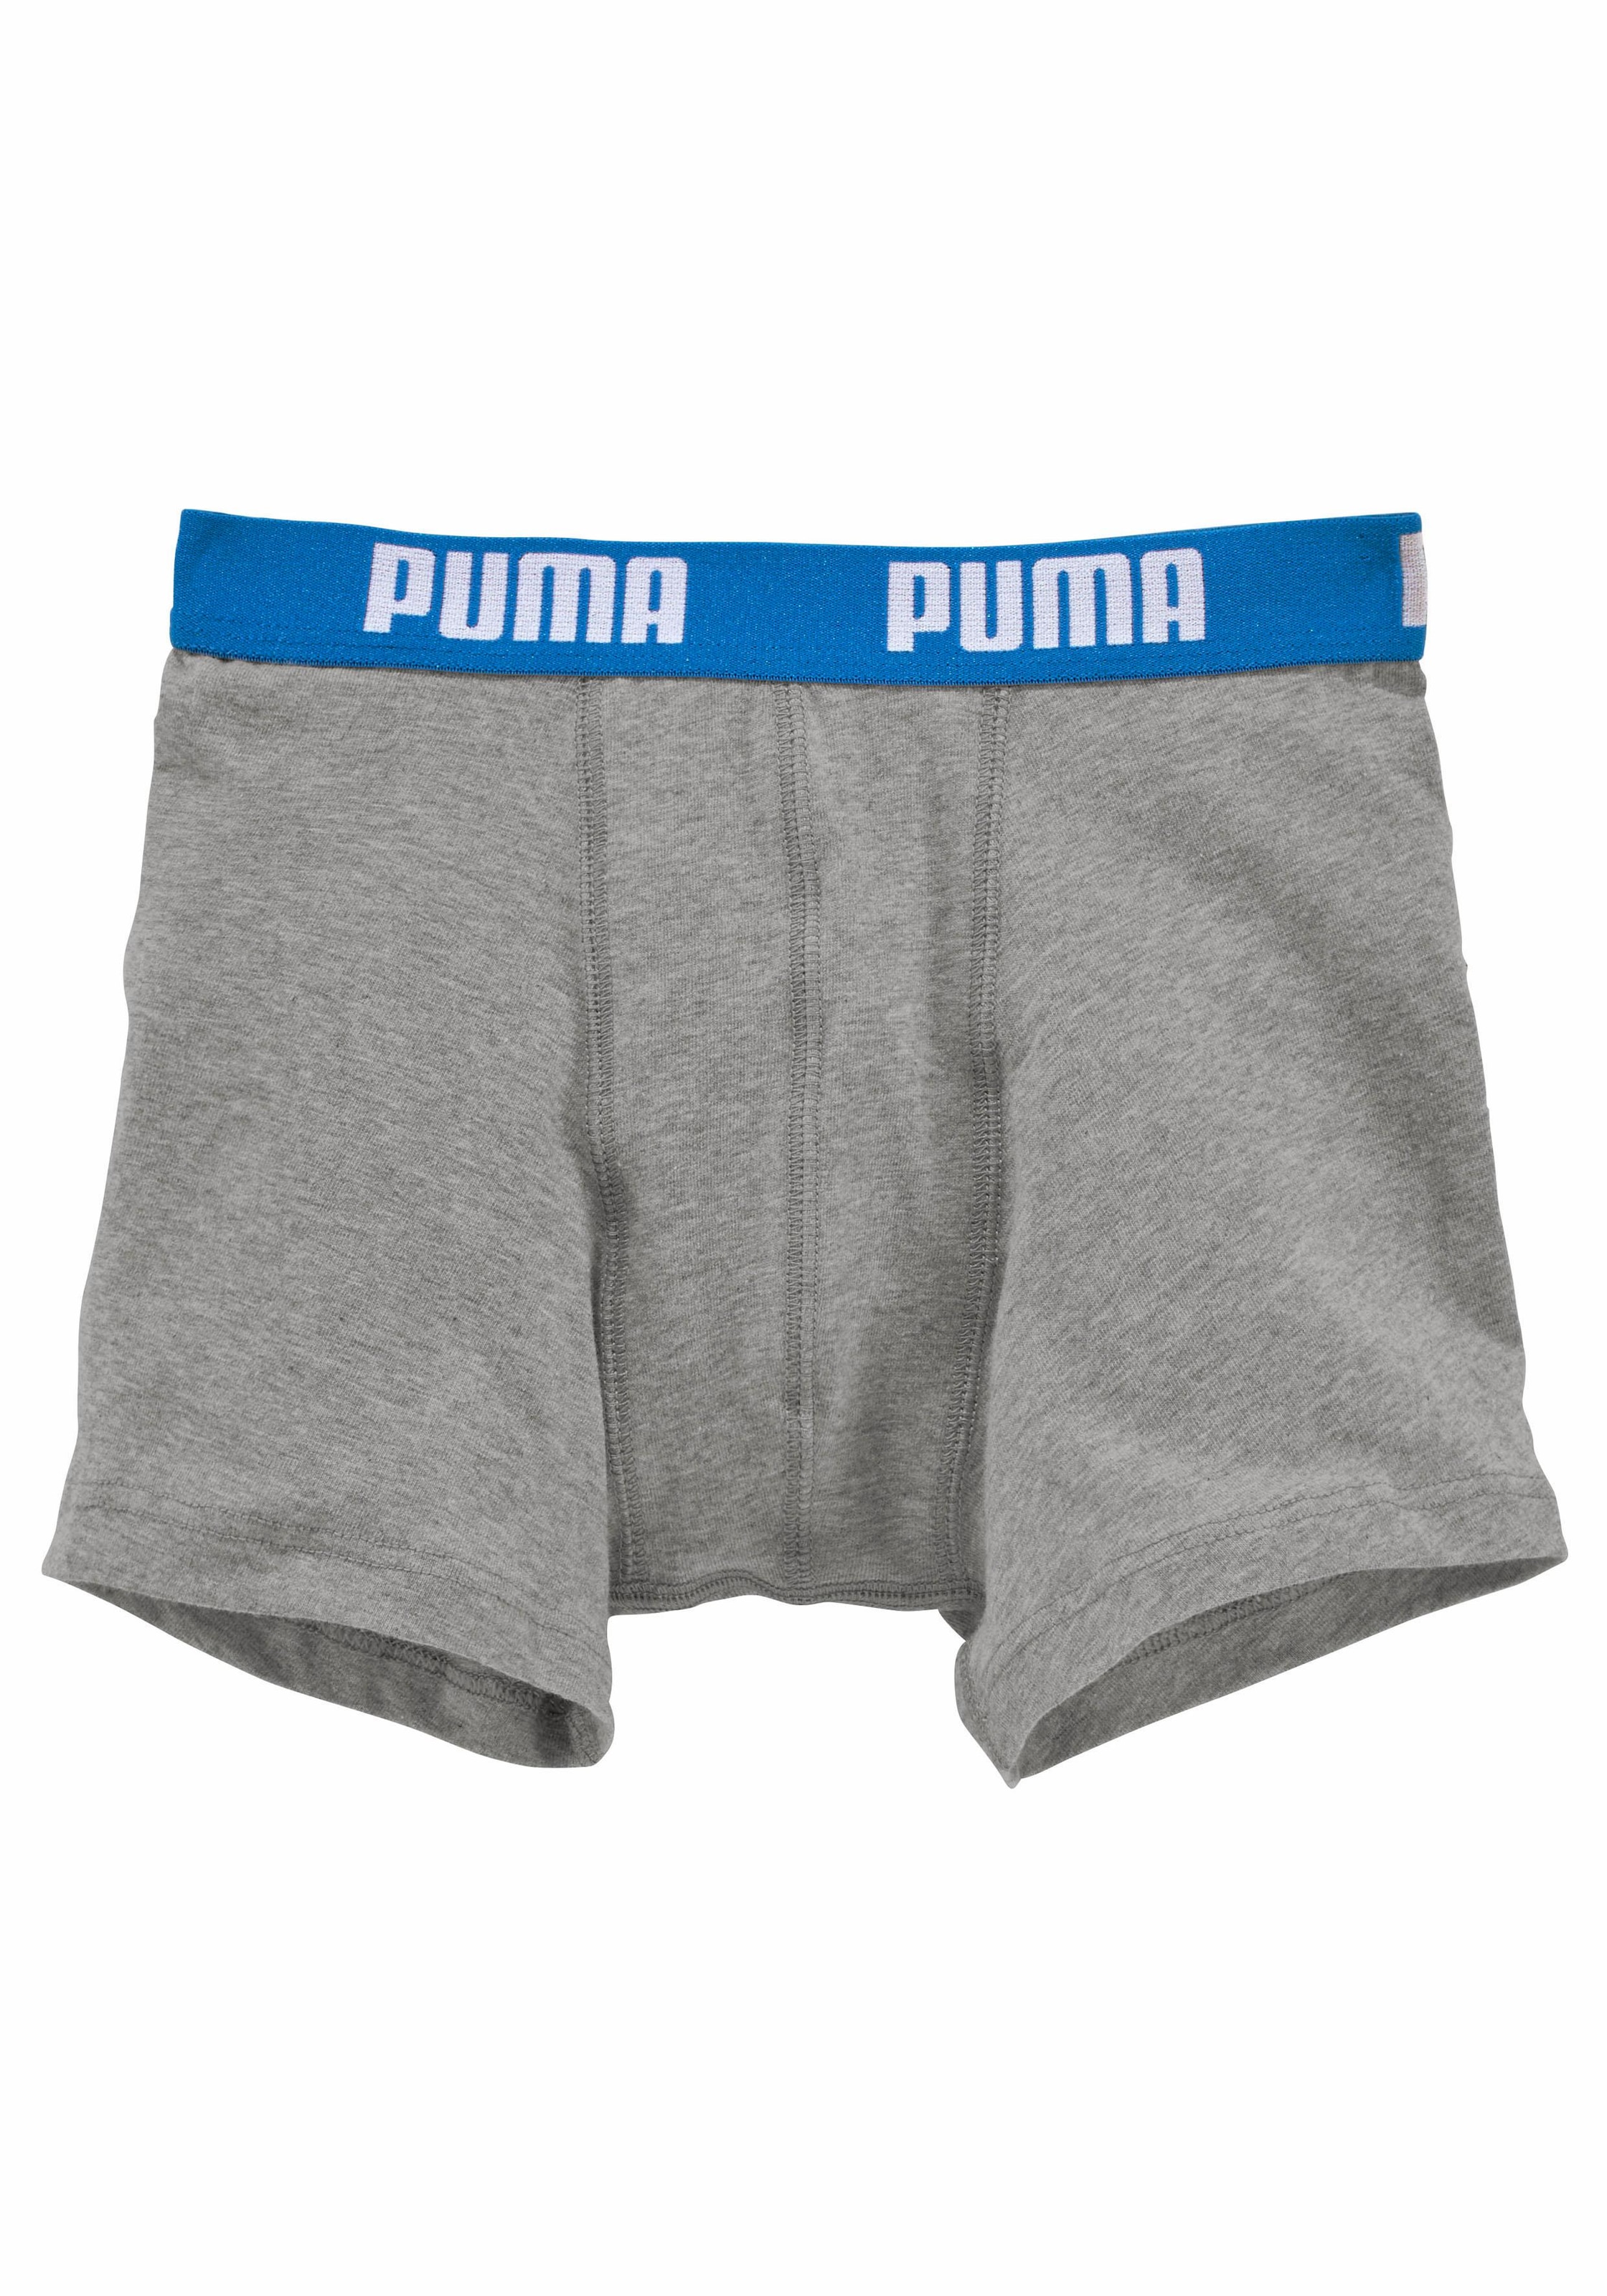 PUMA Boxer (2 Logoschriftzug BAUR kaufen online mit Stück) 